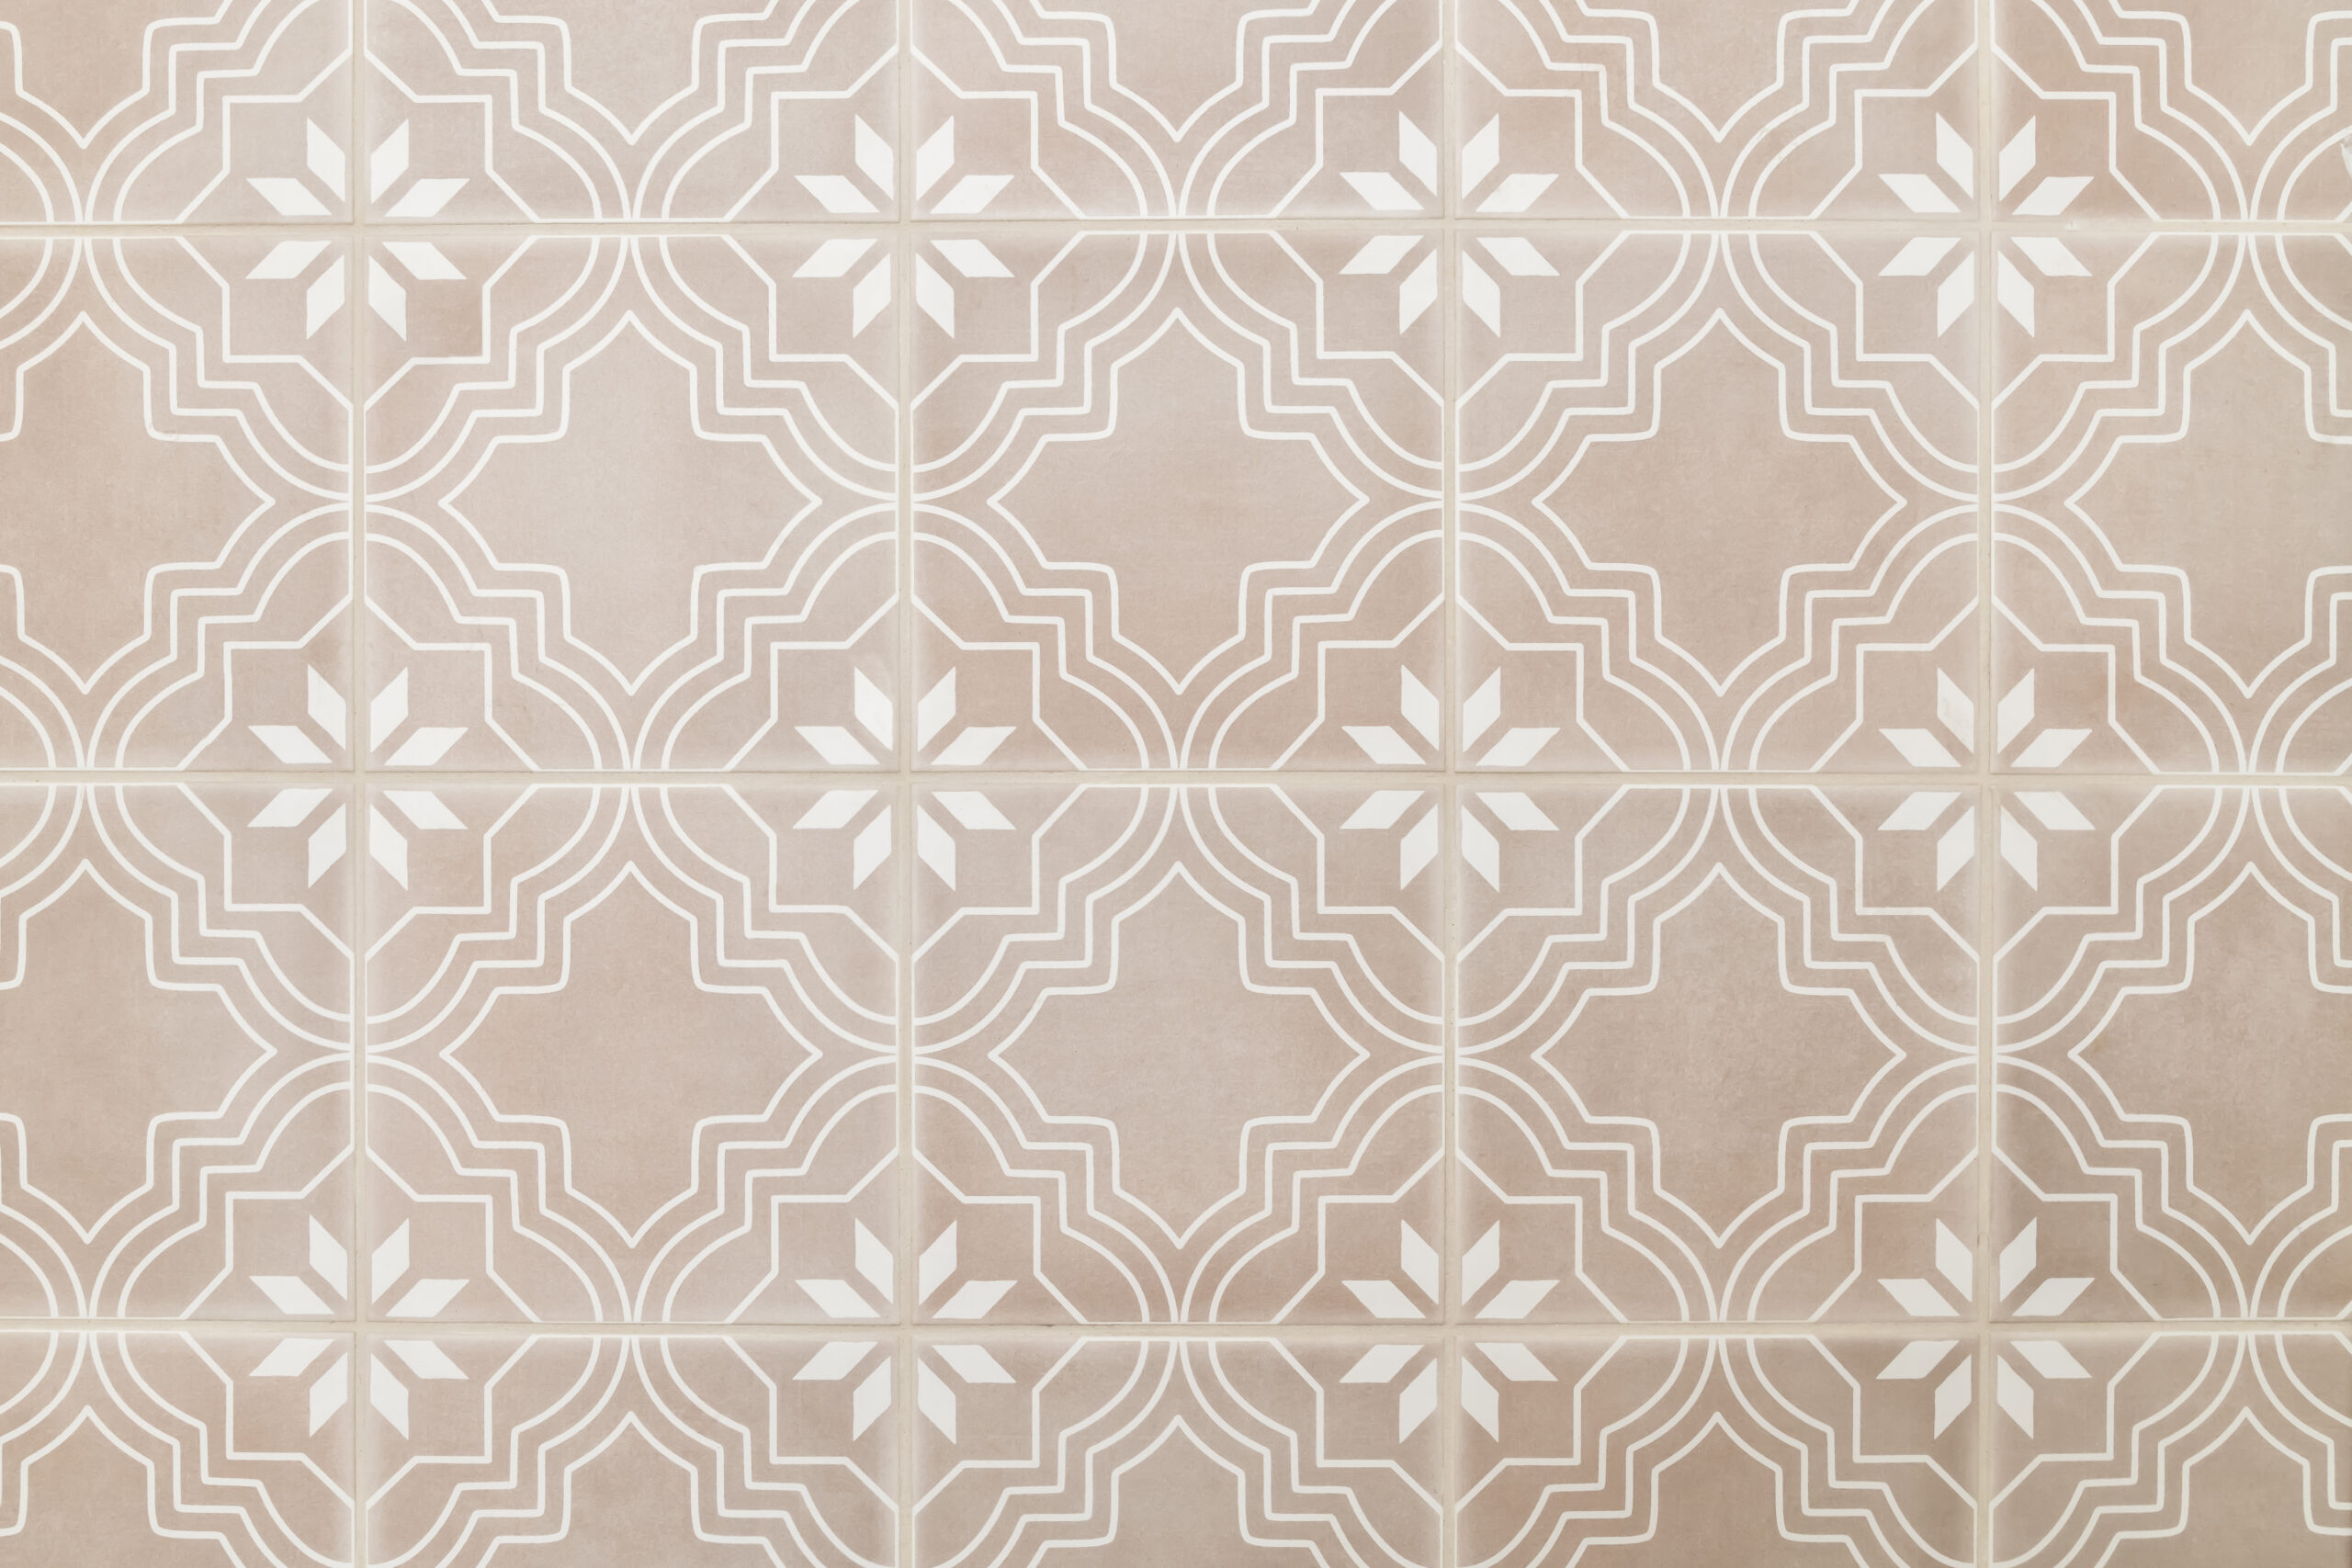 Townbridge guest bath closeup tile floor